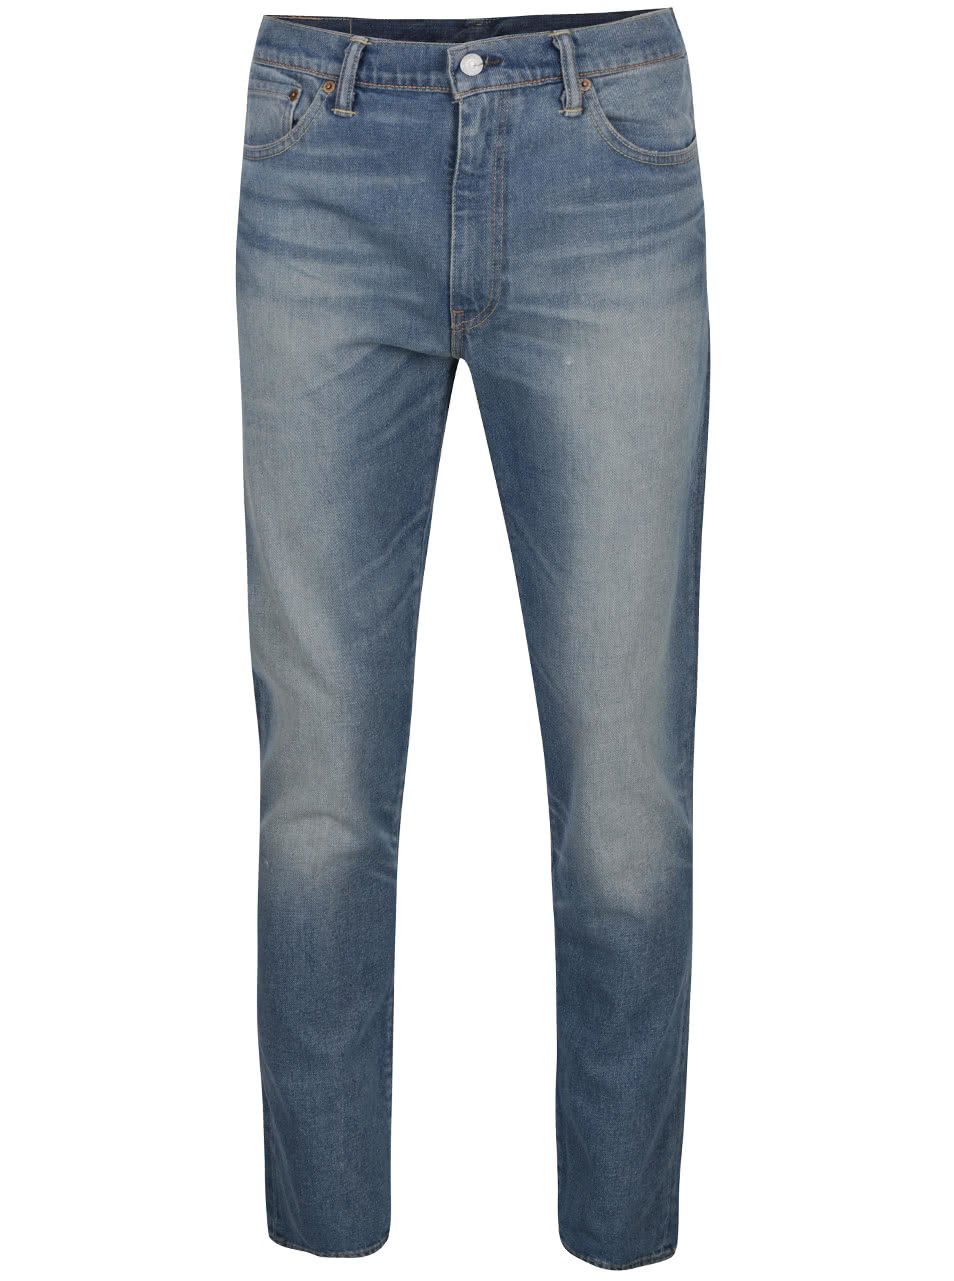 Modré pánské slim džíny s vyšisovaným efektem Levi's® 511™